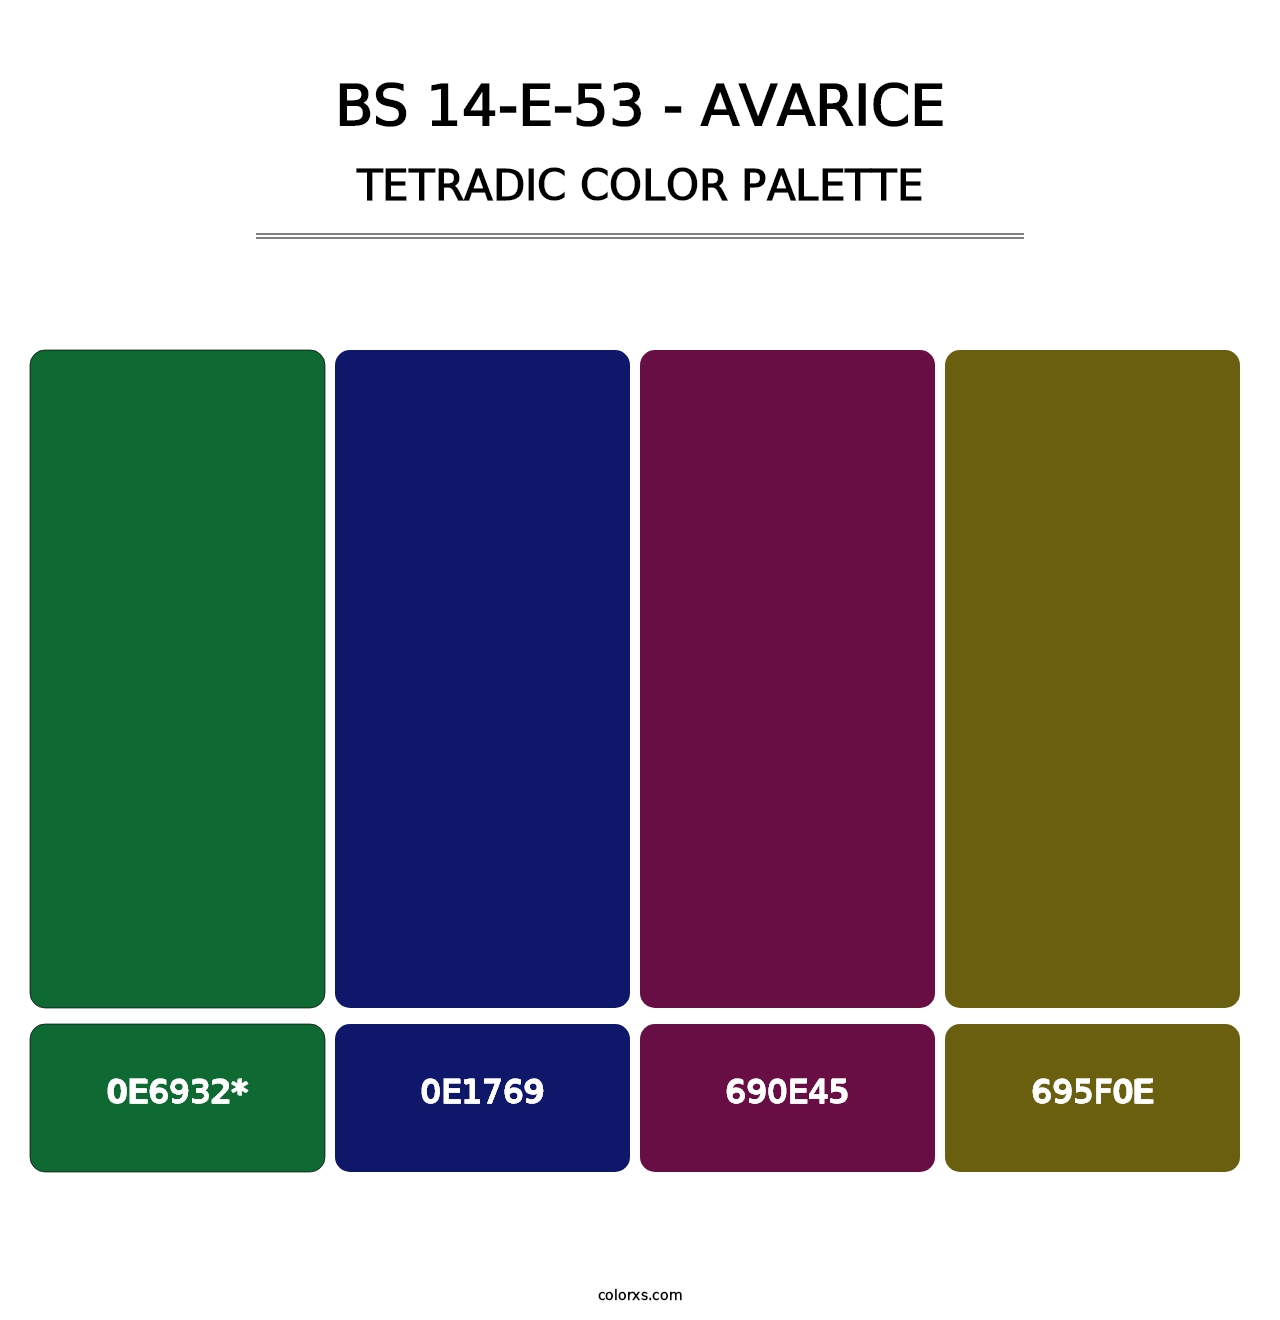 BS 14-E-53 - Avarice - Tetradic Color Palette